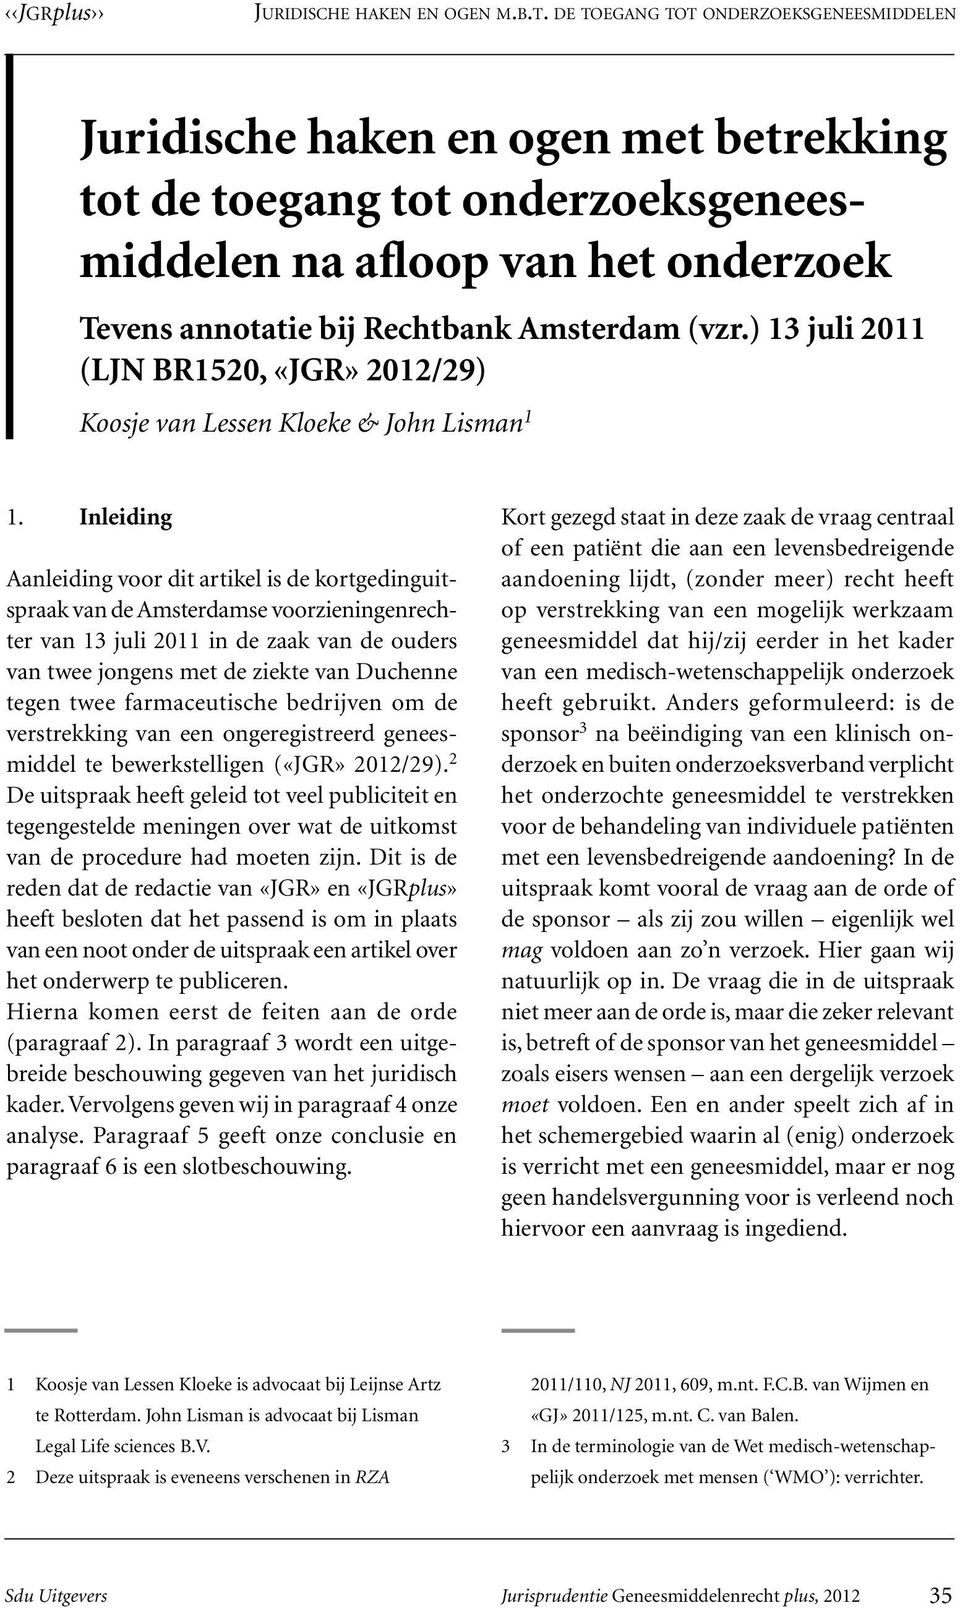 Inleiding Aanleiding voor dit artikel is de kortgedinguitspraak van de Amsterdamse voorzieningenrechter van 13 juli 2011 in de zaak van de ouders van twee jongens met de ziekte van Duchenne tegen